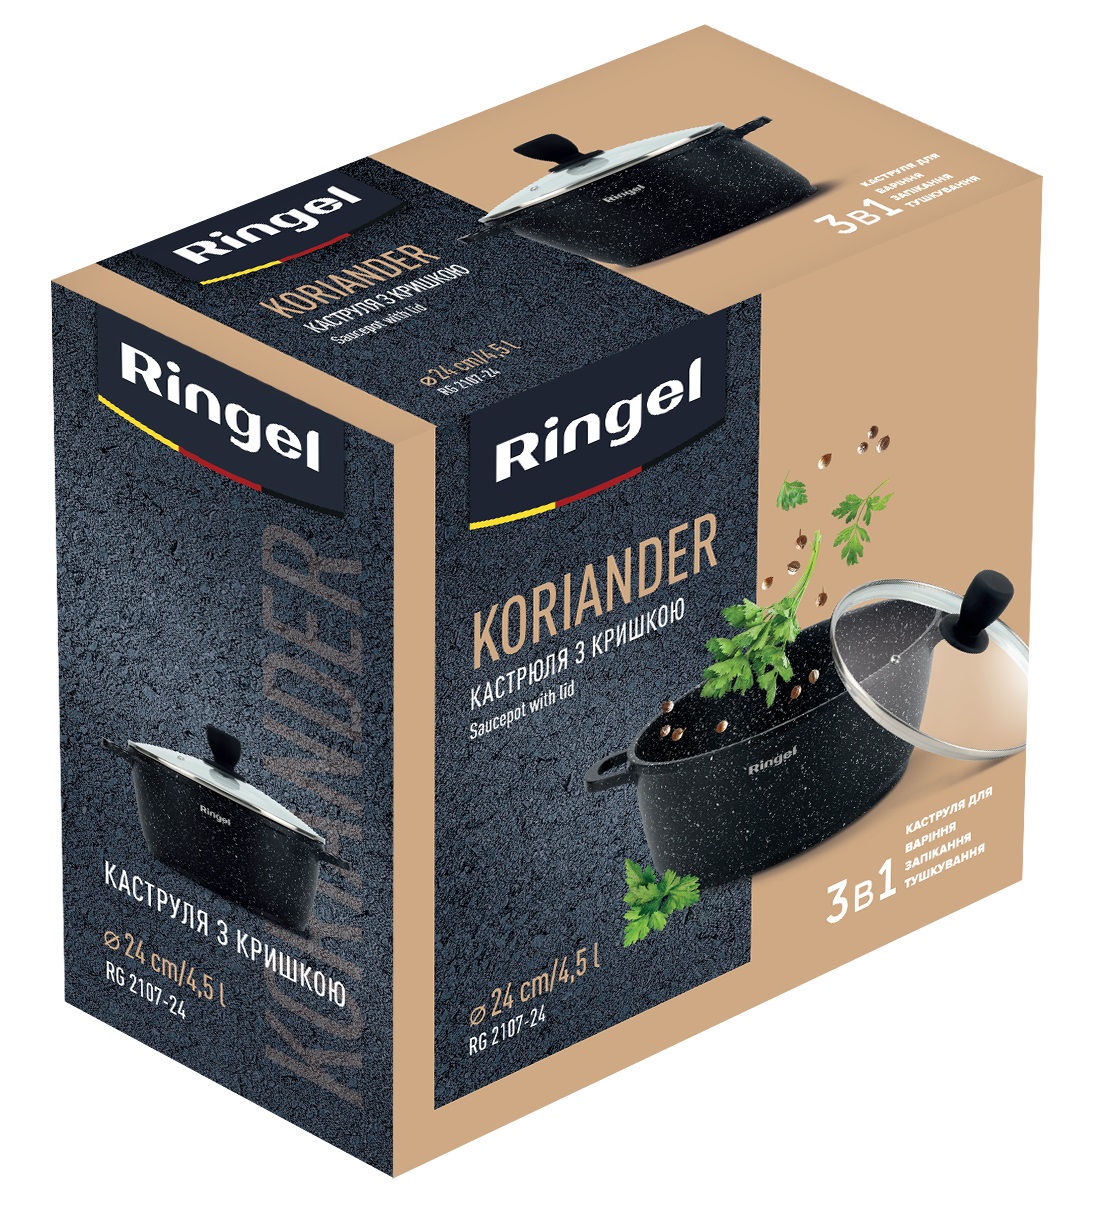 Кастрюля RINGEL RG-2107-24 Koriander 4.5 л, недорого